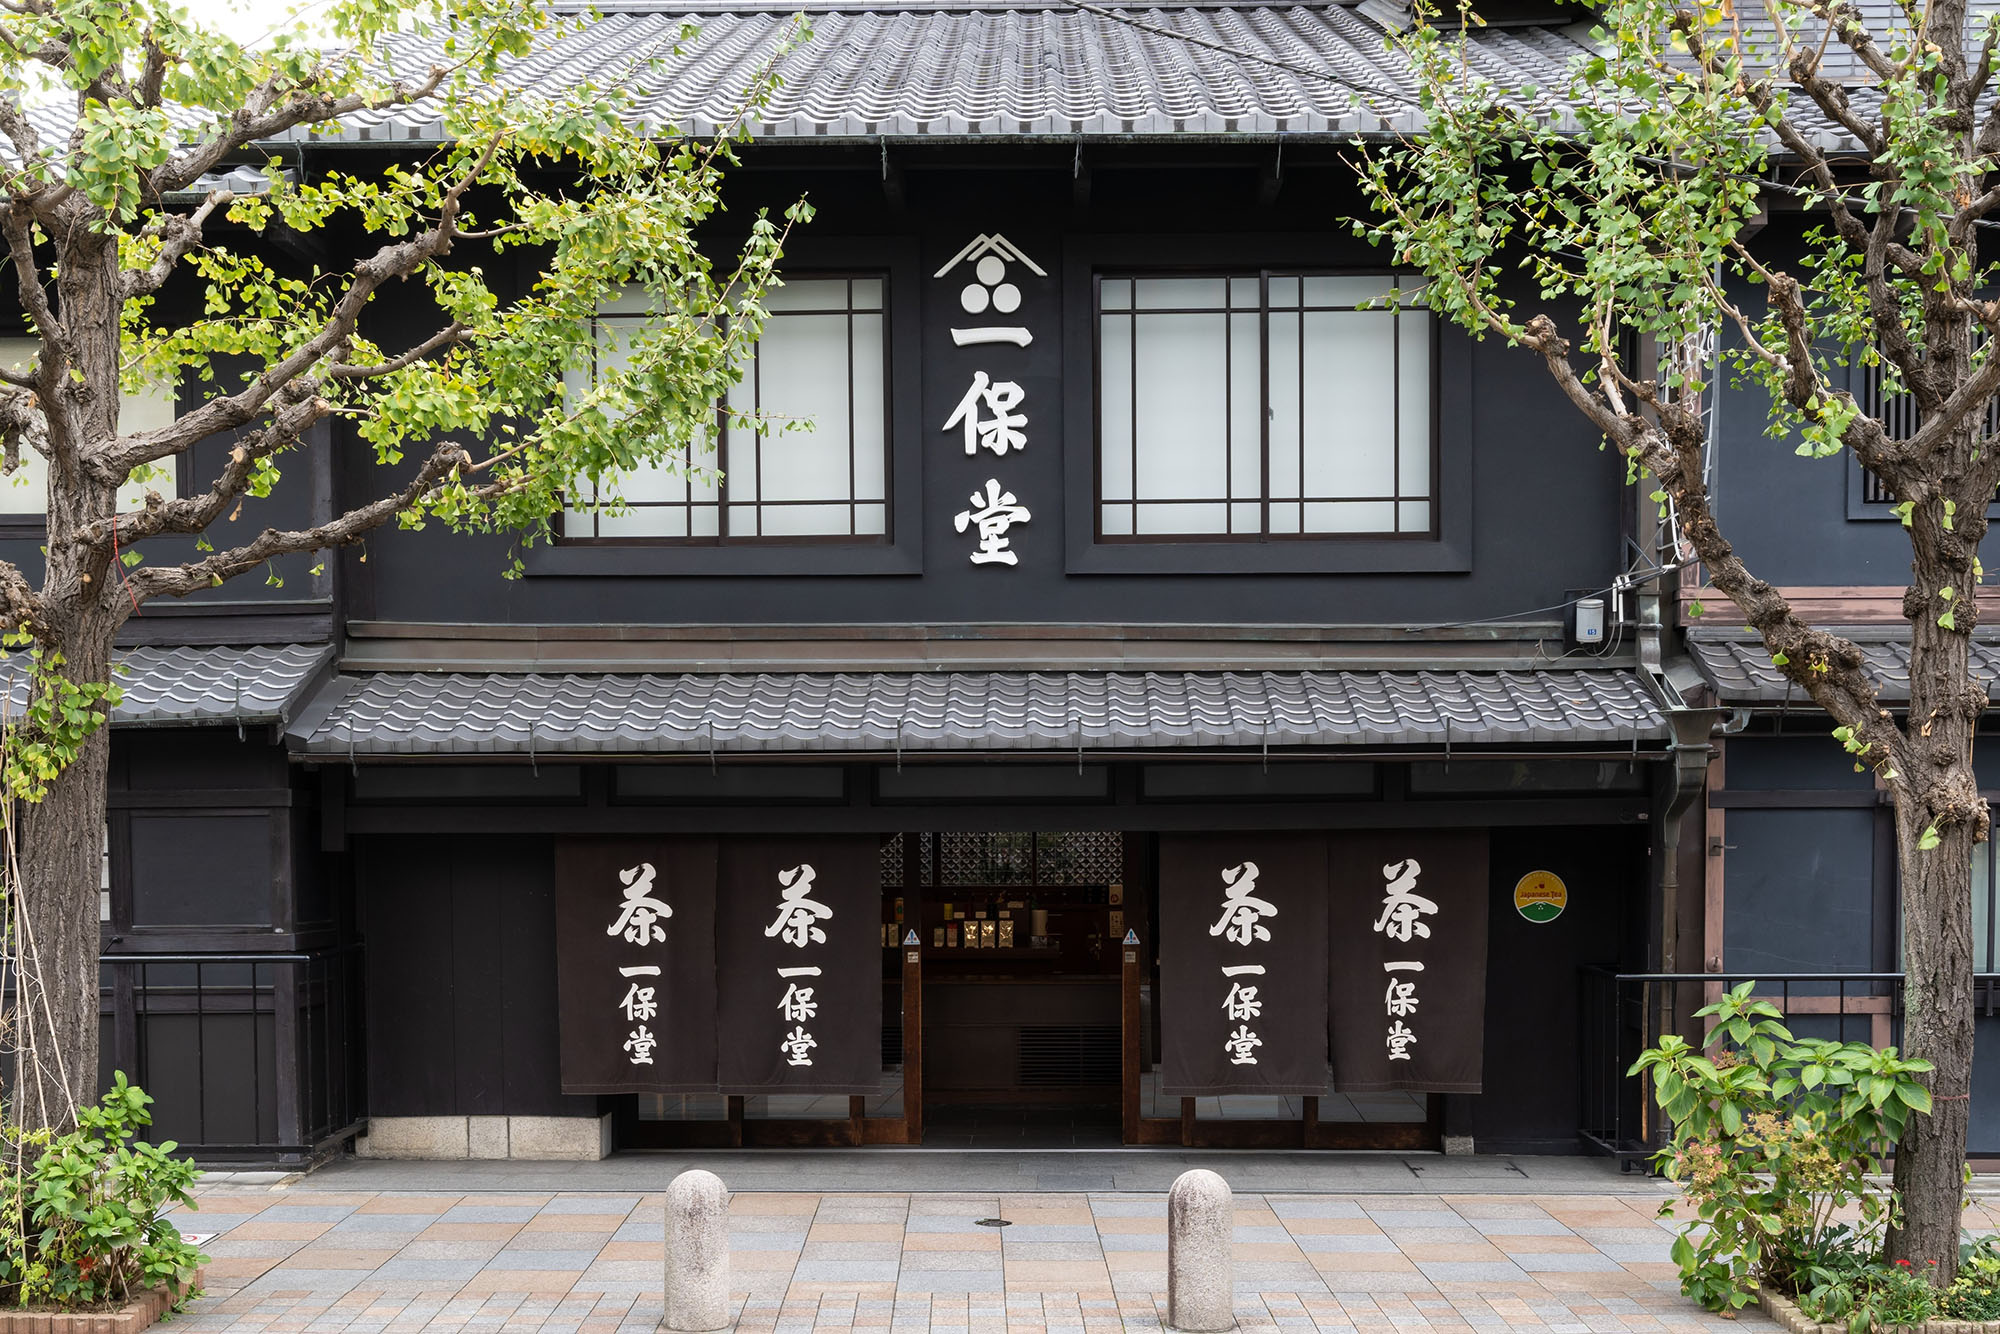 Ippodo Chaho Main Branch (Ippodo Tea)'s image 1